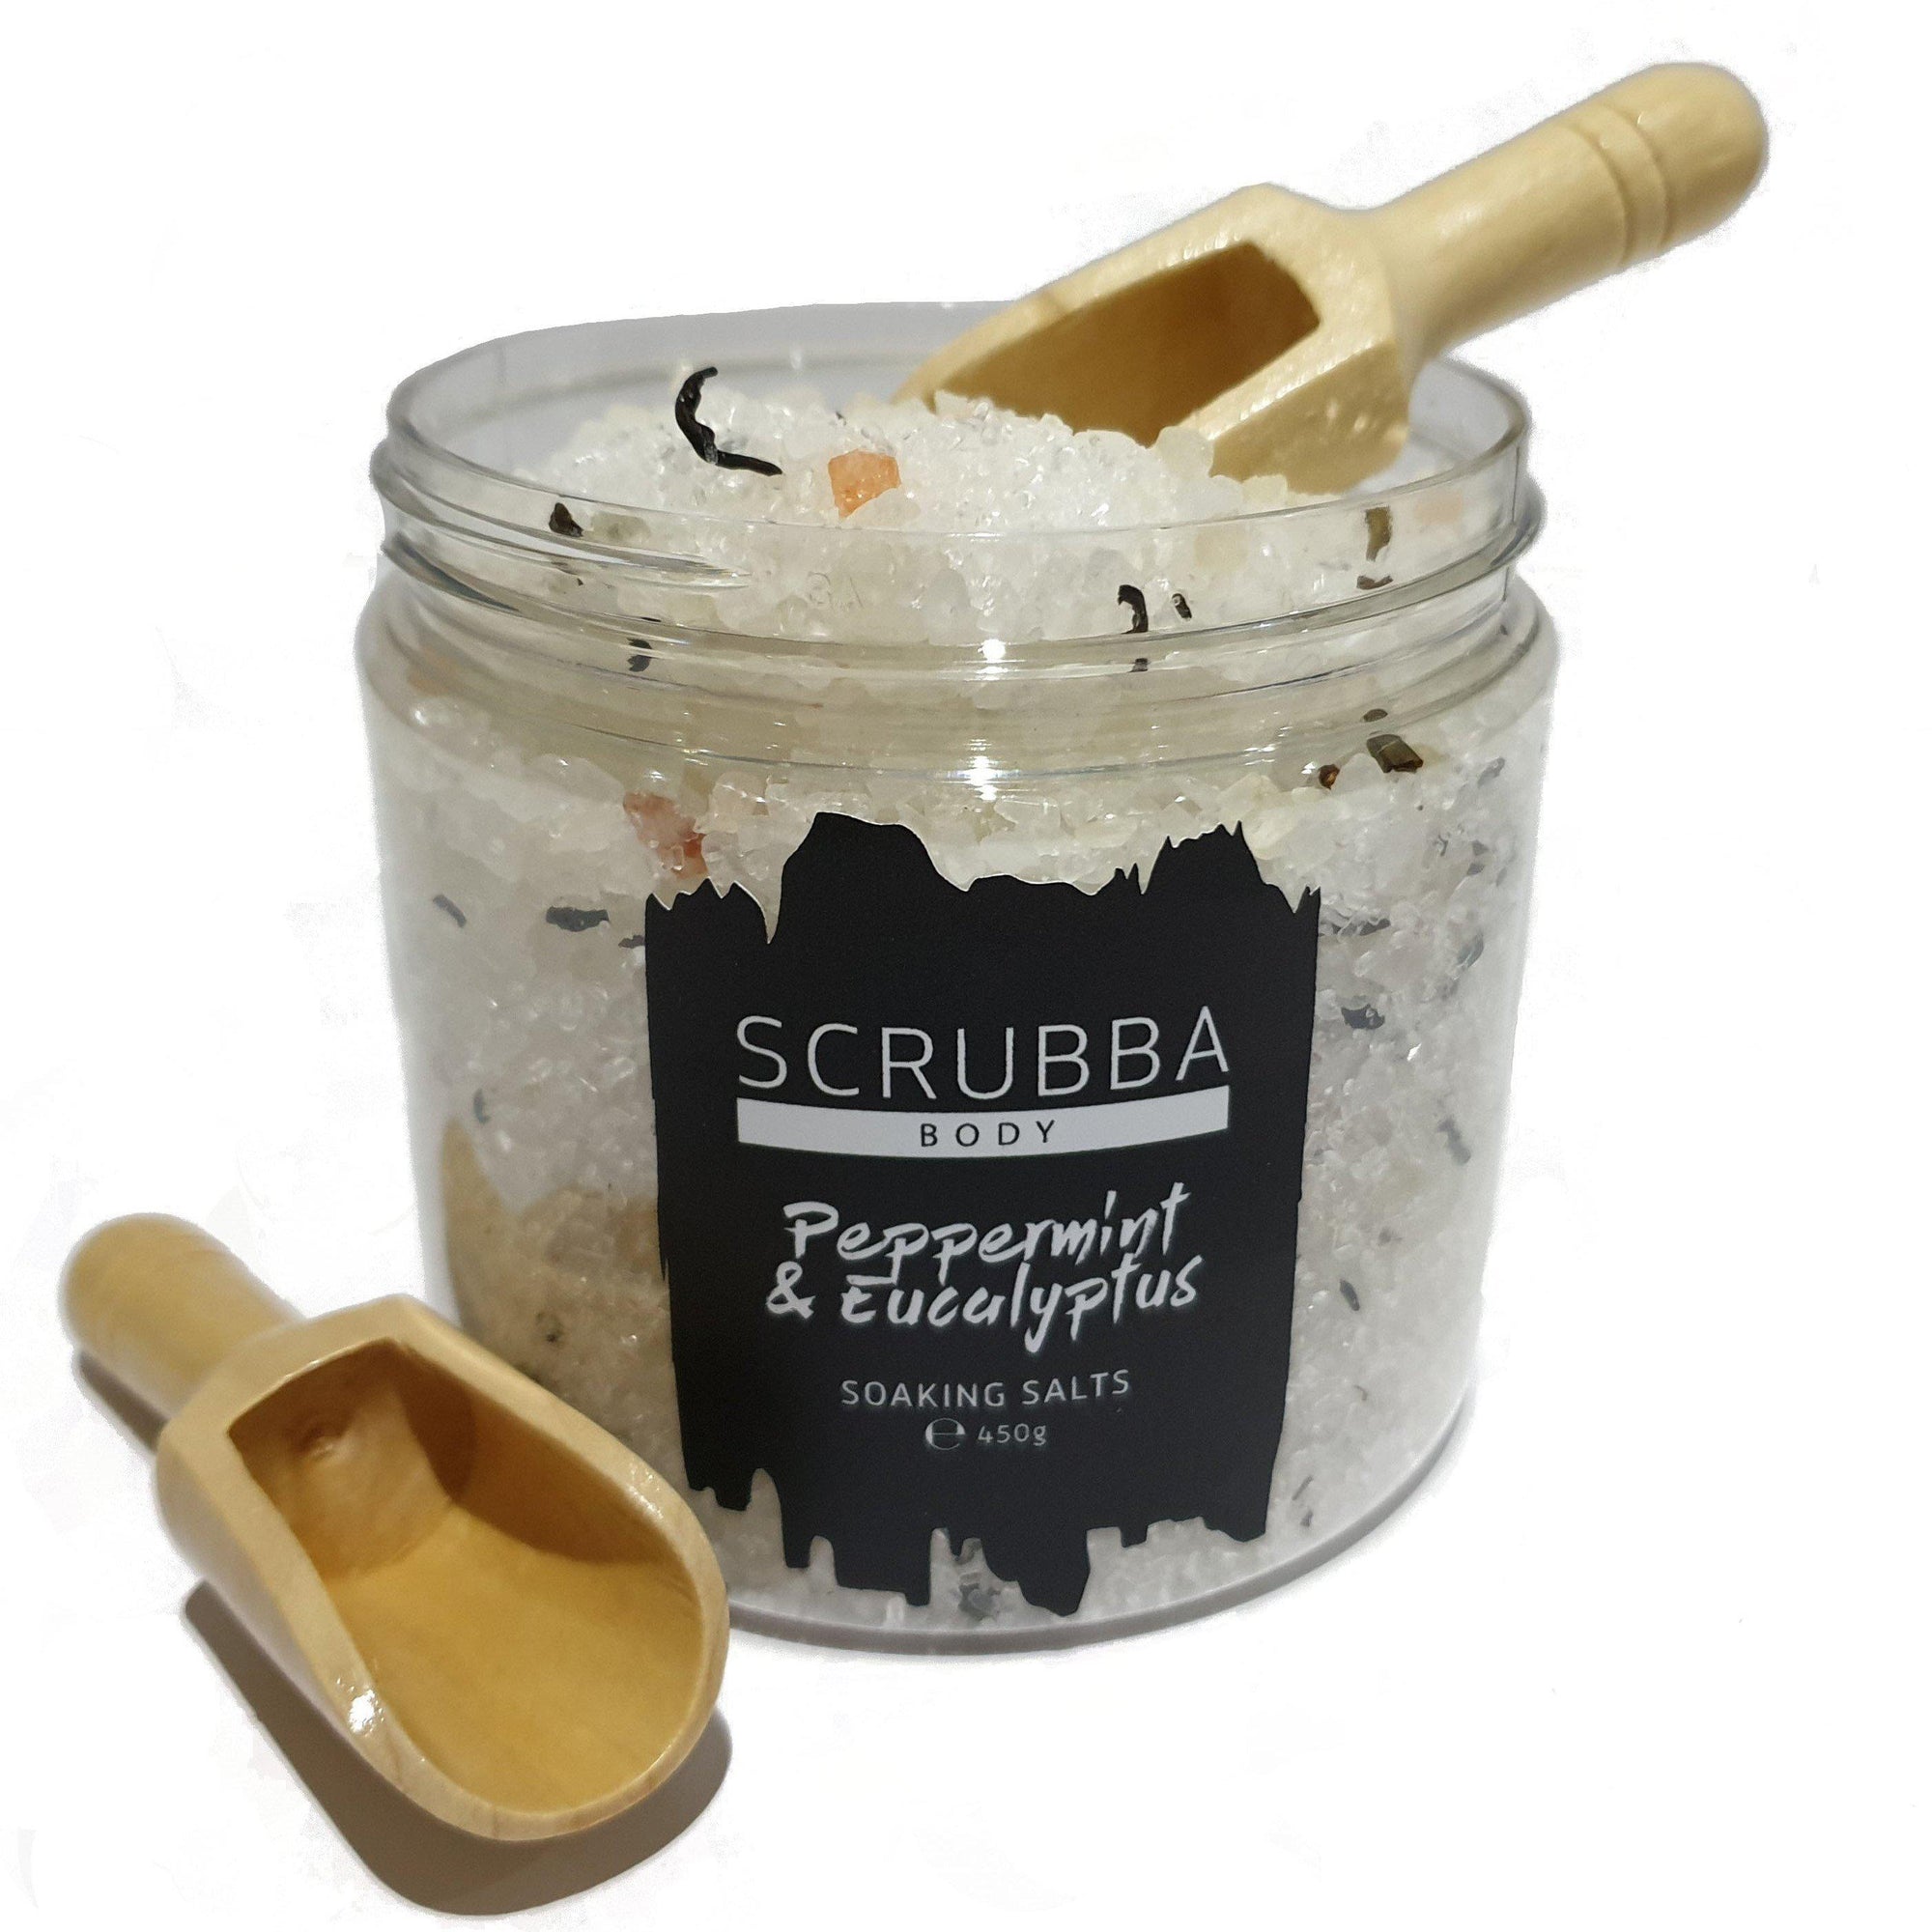 Scrubba Body Bath Soak Peppermint & Eucalyptus Bath Soaking Salts